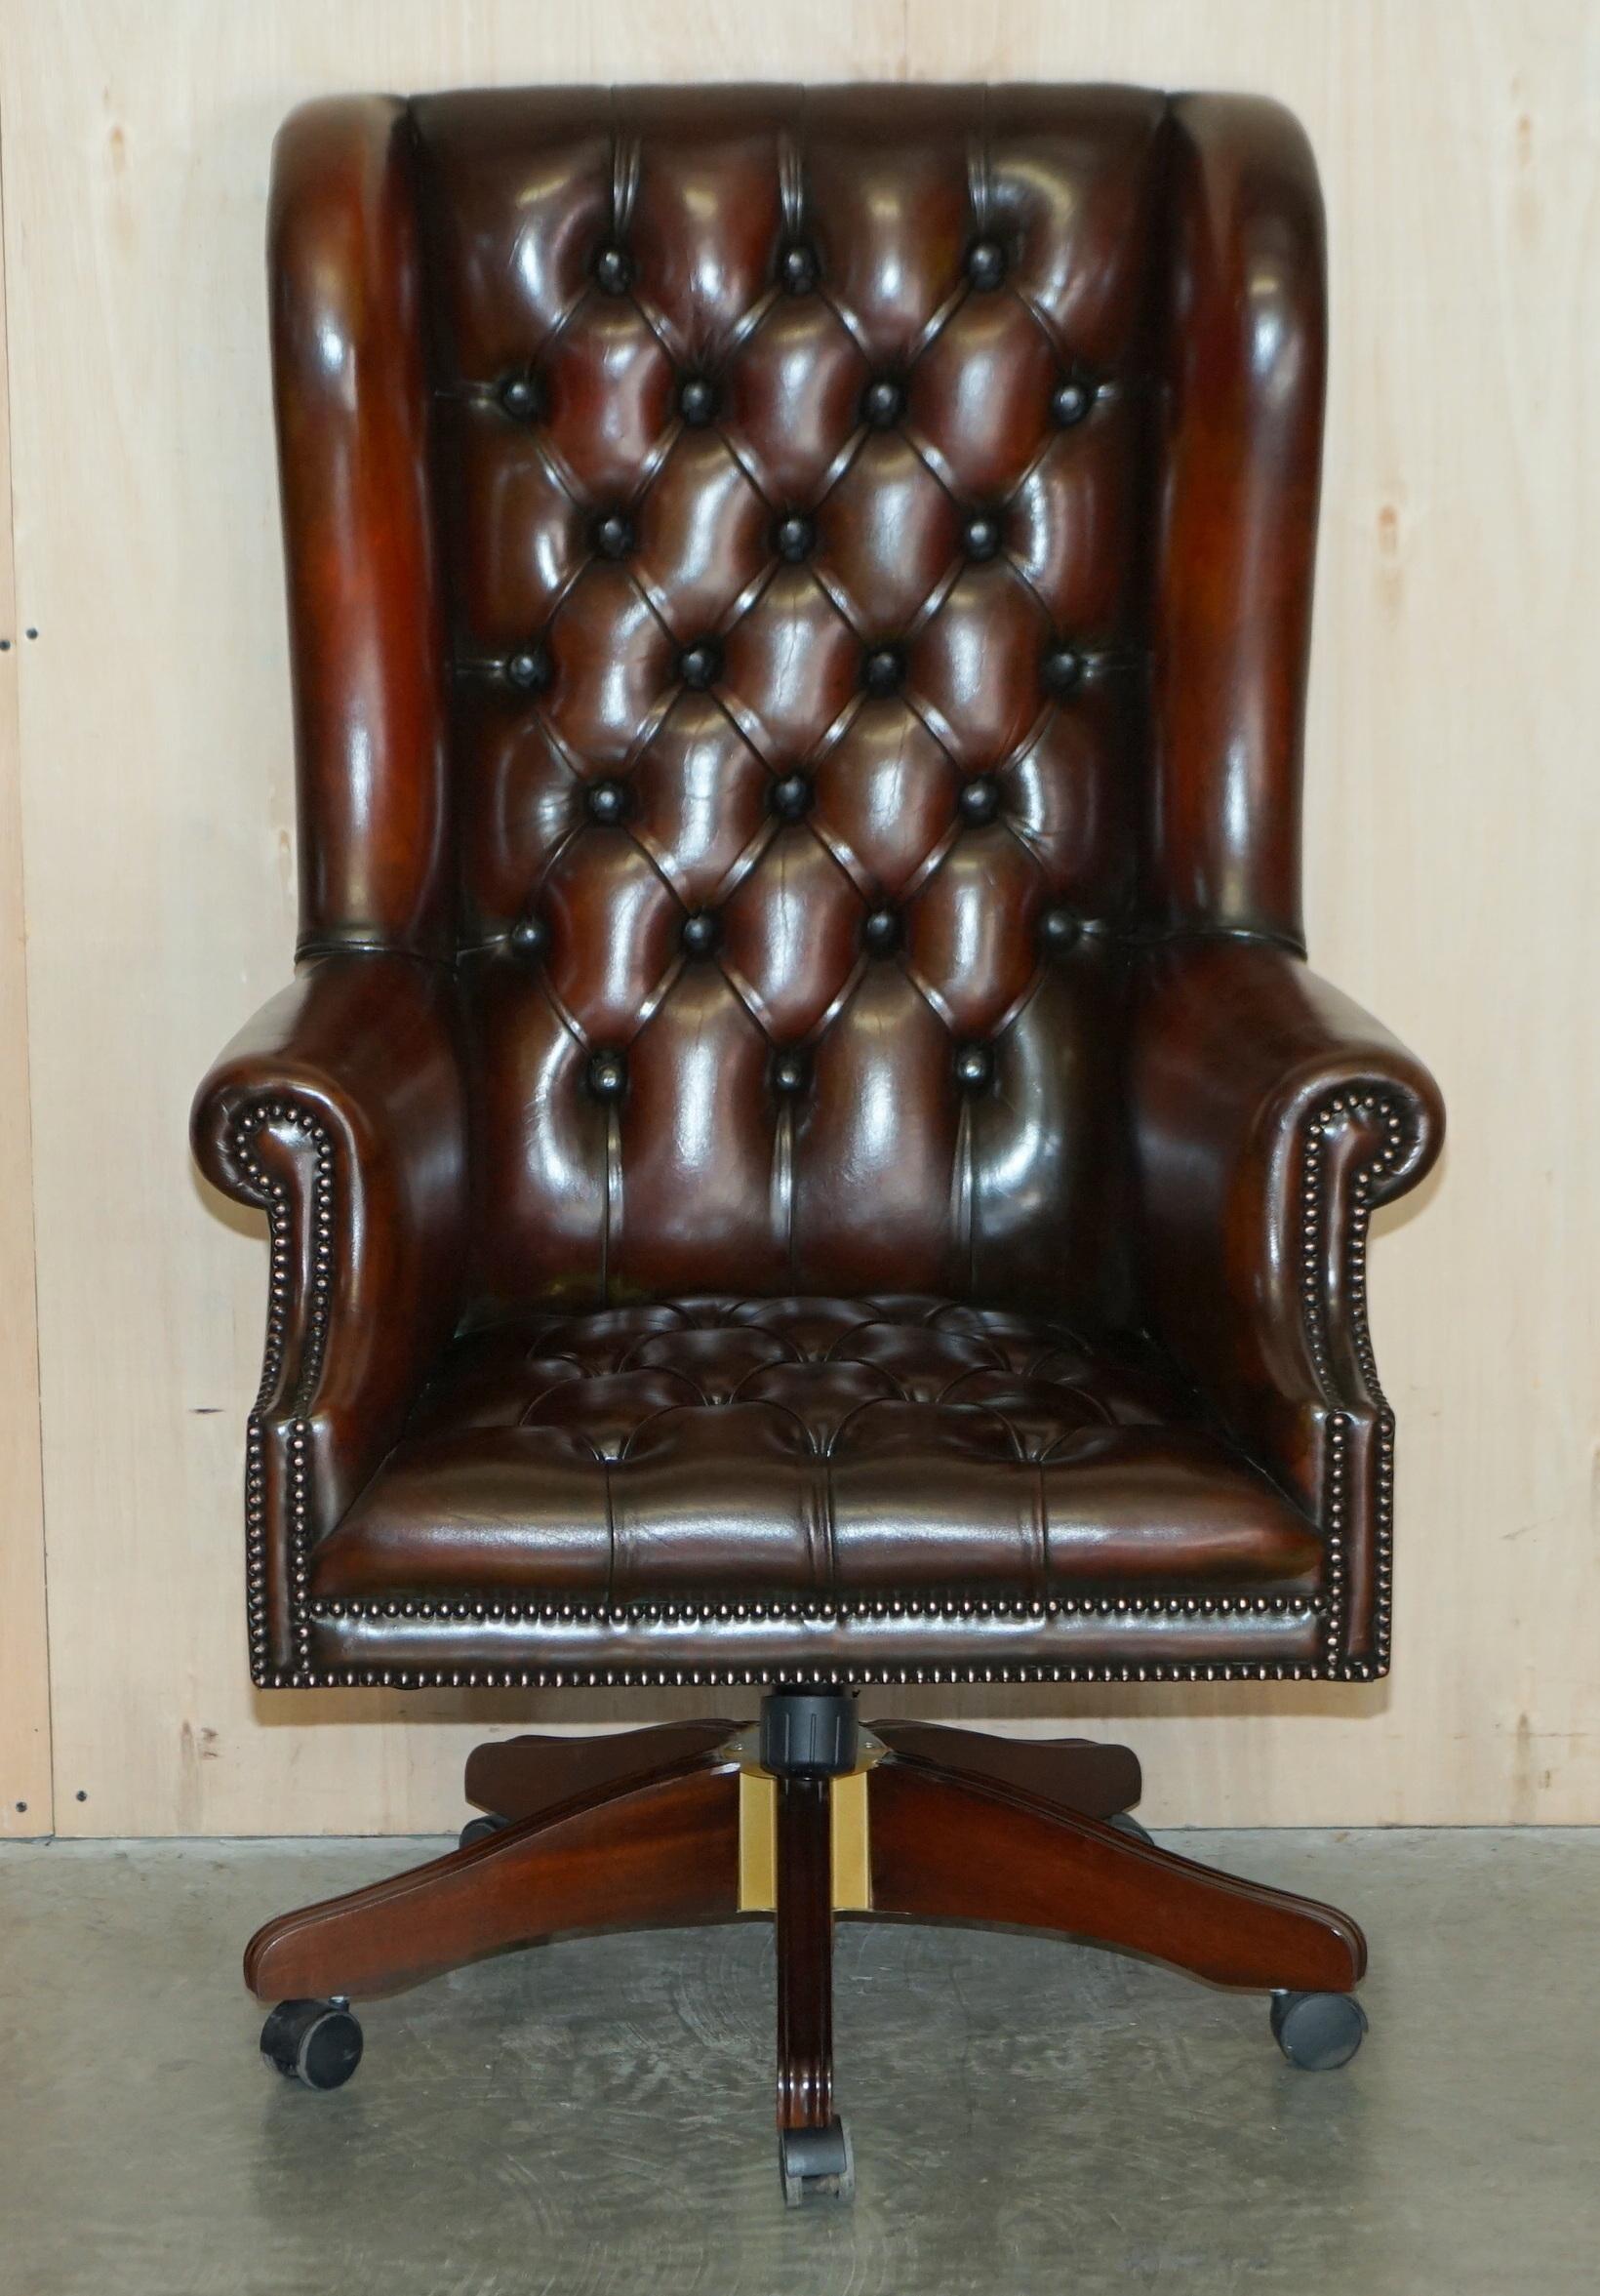 Wir freuen uns, diese atemberaubende restauriert Hand gefärbt Zigarre braunem Leder sehr große Chesterfield Wingback Bürostuhl mit original Leder und Patina zum Verkauf anbieten.

Das ist in der Tat ein sehr bequemer Kapitänssessel, wie Ihr